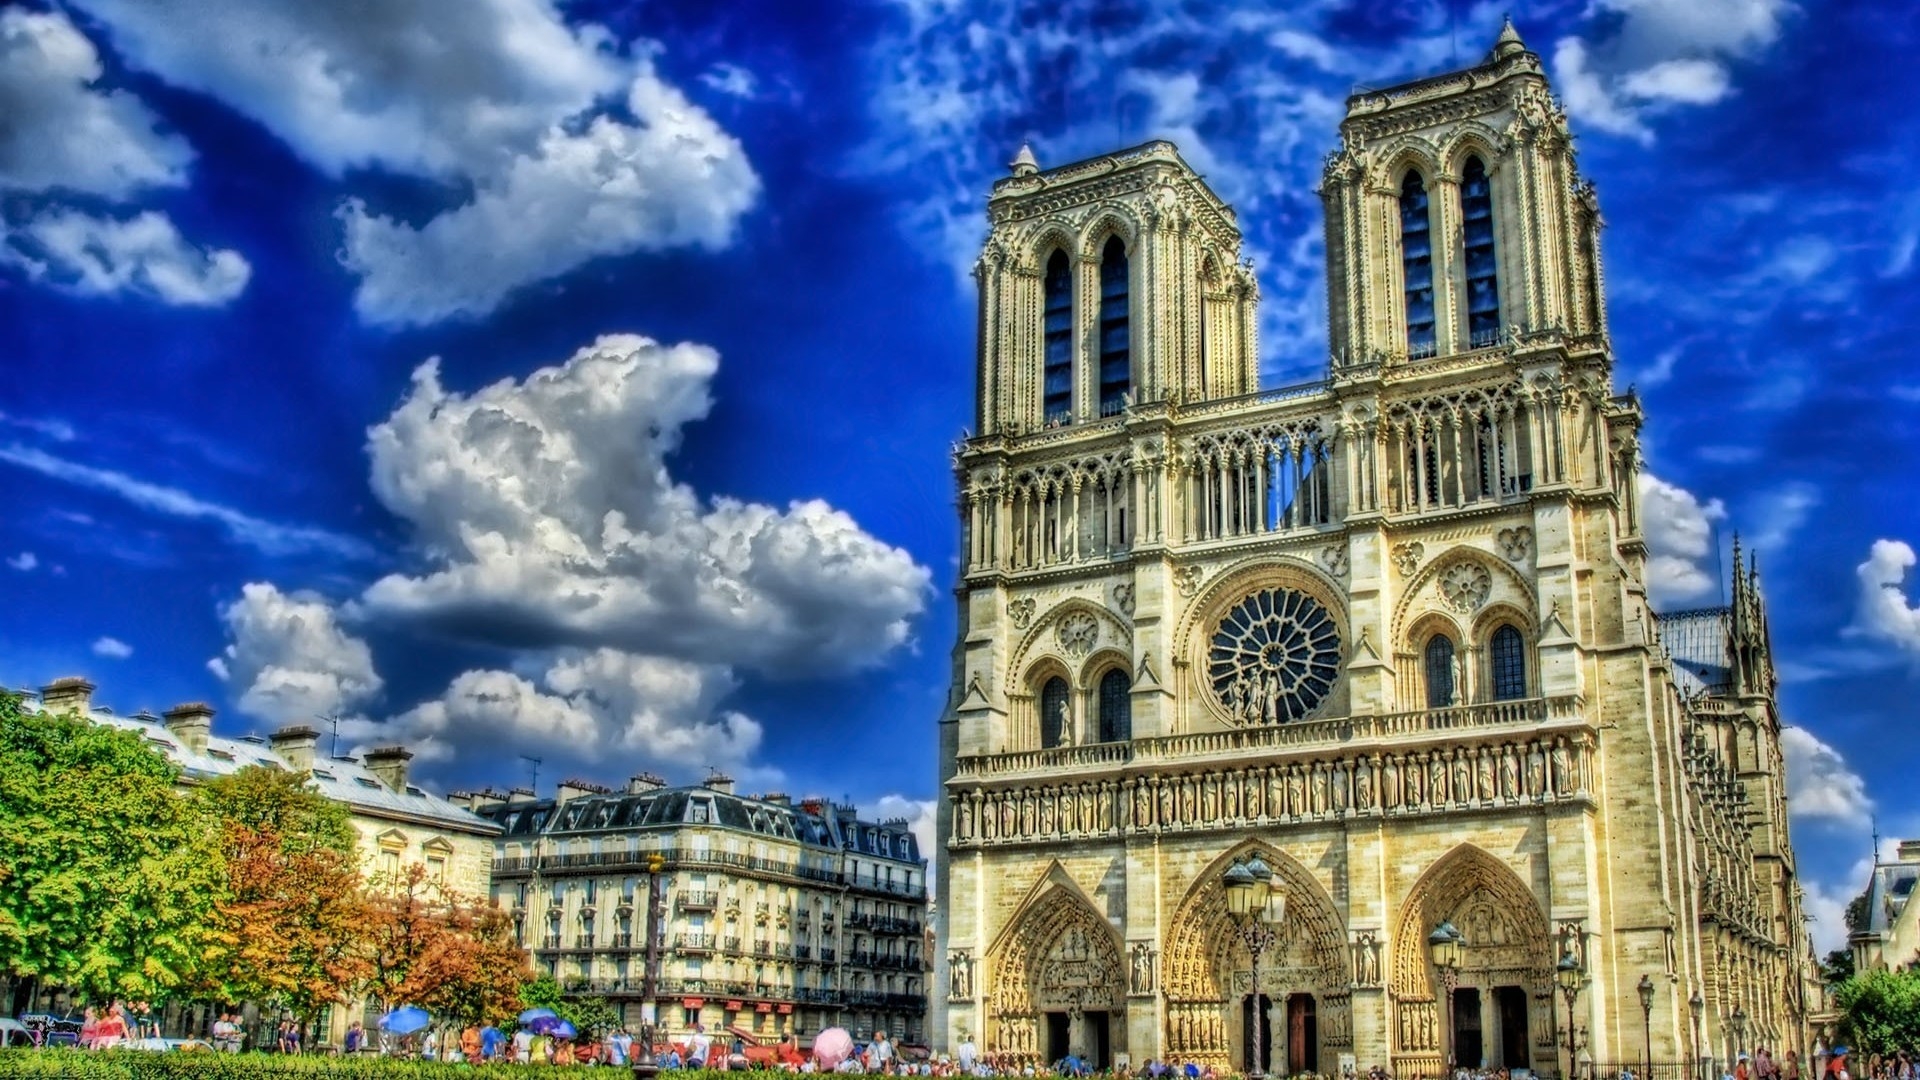 Notre Dame de Paris Cathedral for 1920 x 1080 HDTV 1080p resolution